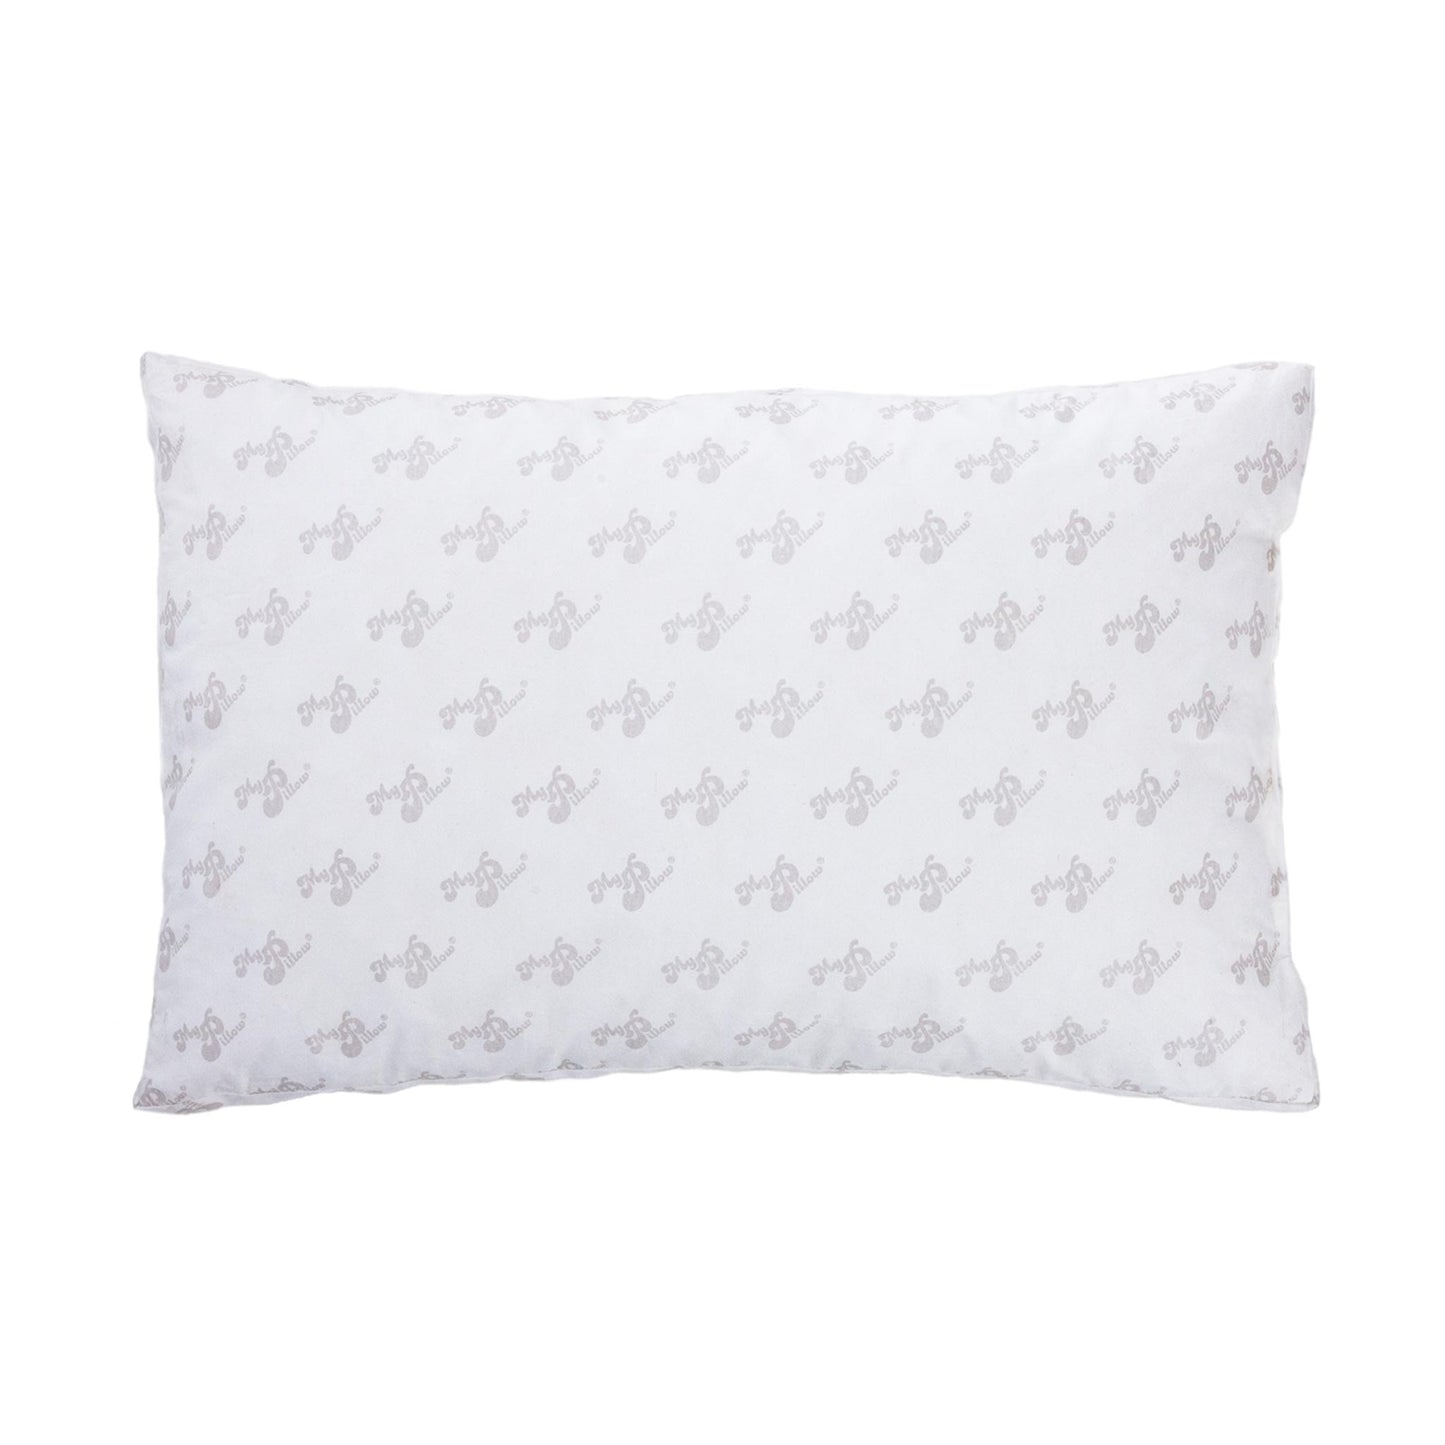 My Pillow - Standard/Queen Bed Premium Pillow-Level 3 (Green)